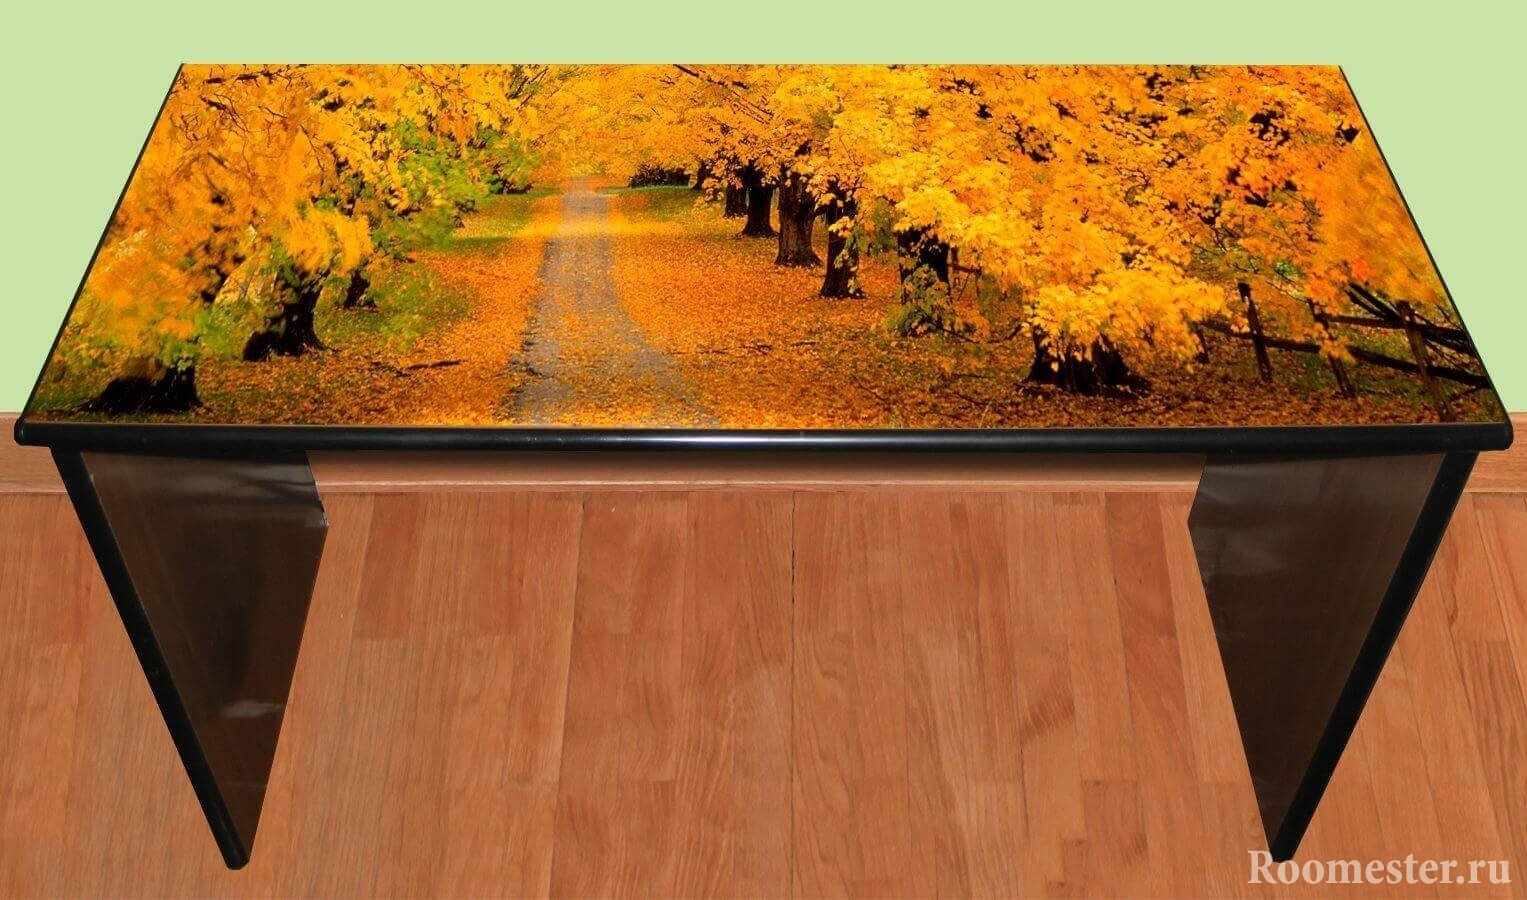 Залакированный стол с картиной